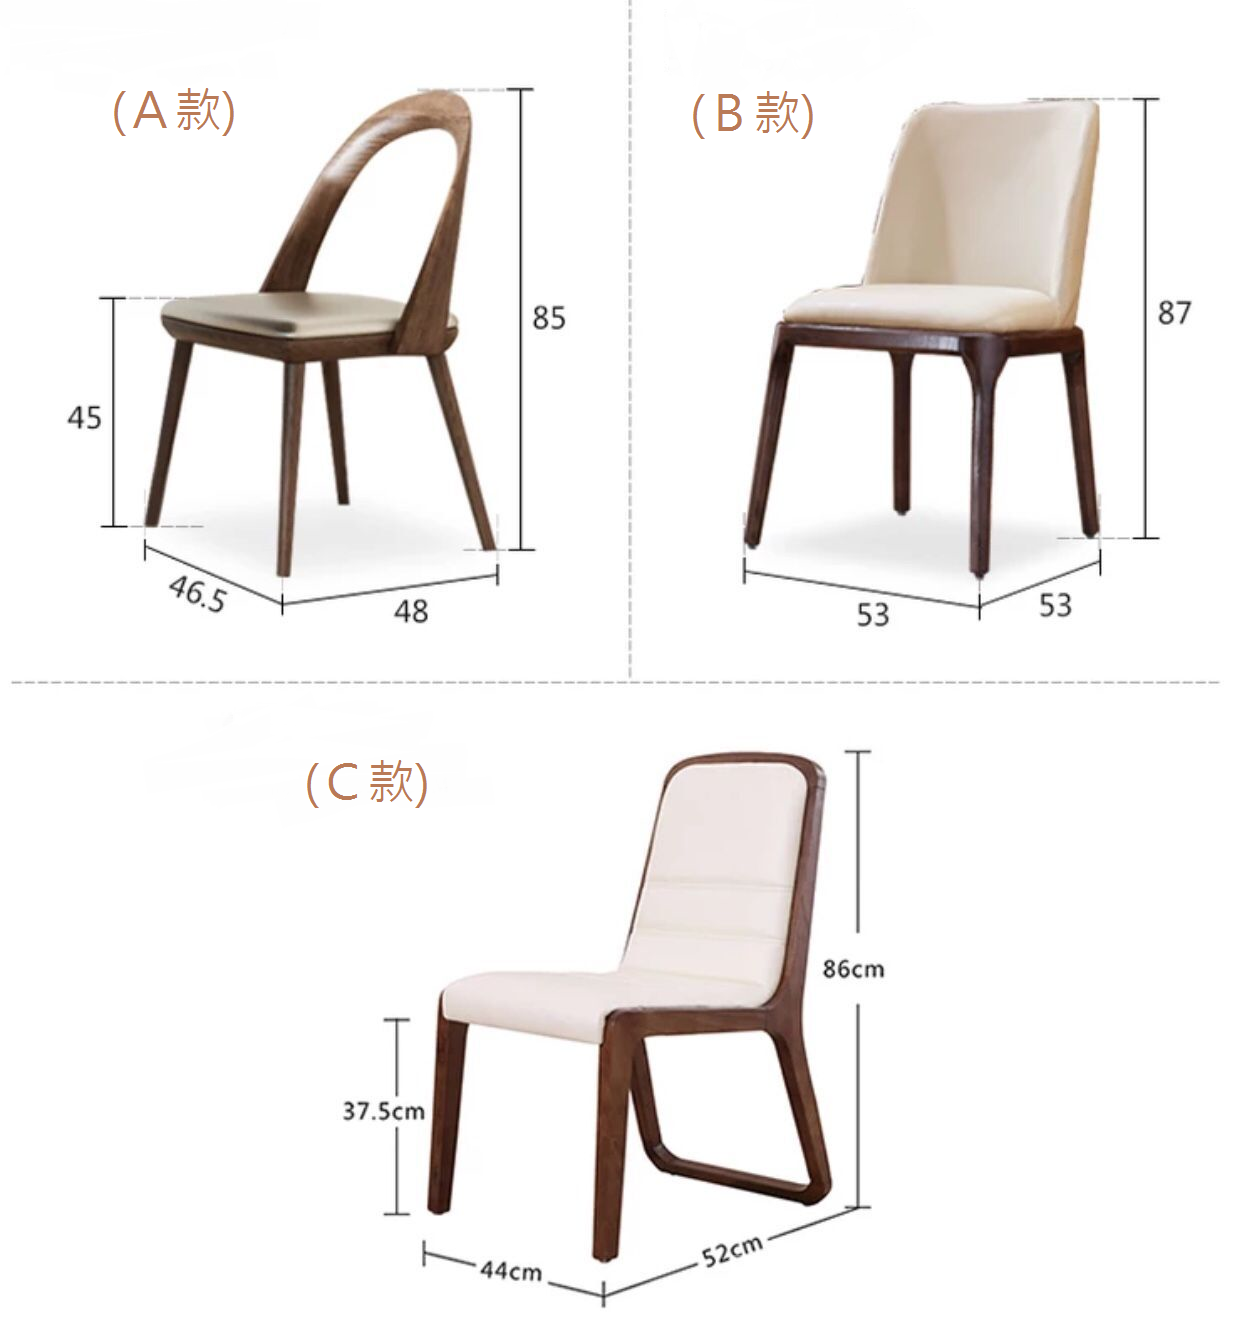 意式氣派系列 餐桌椅子*4呎/4呎3 (IS5965)